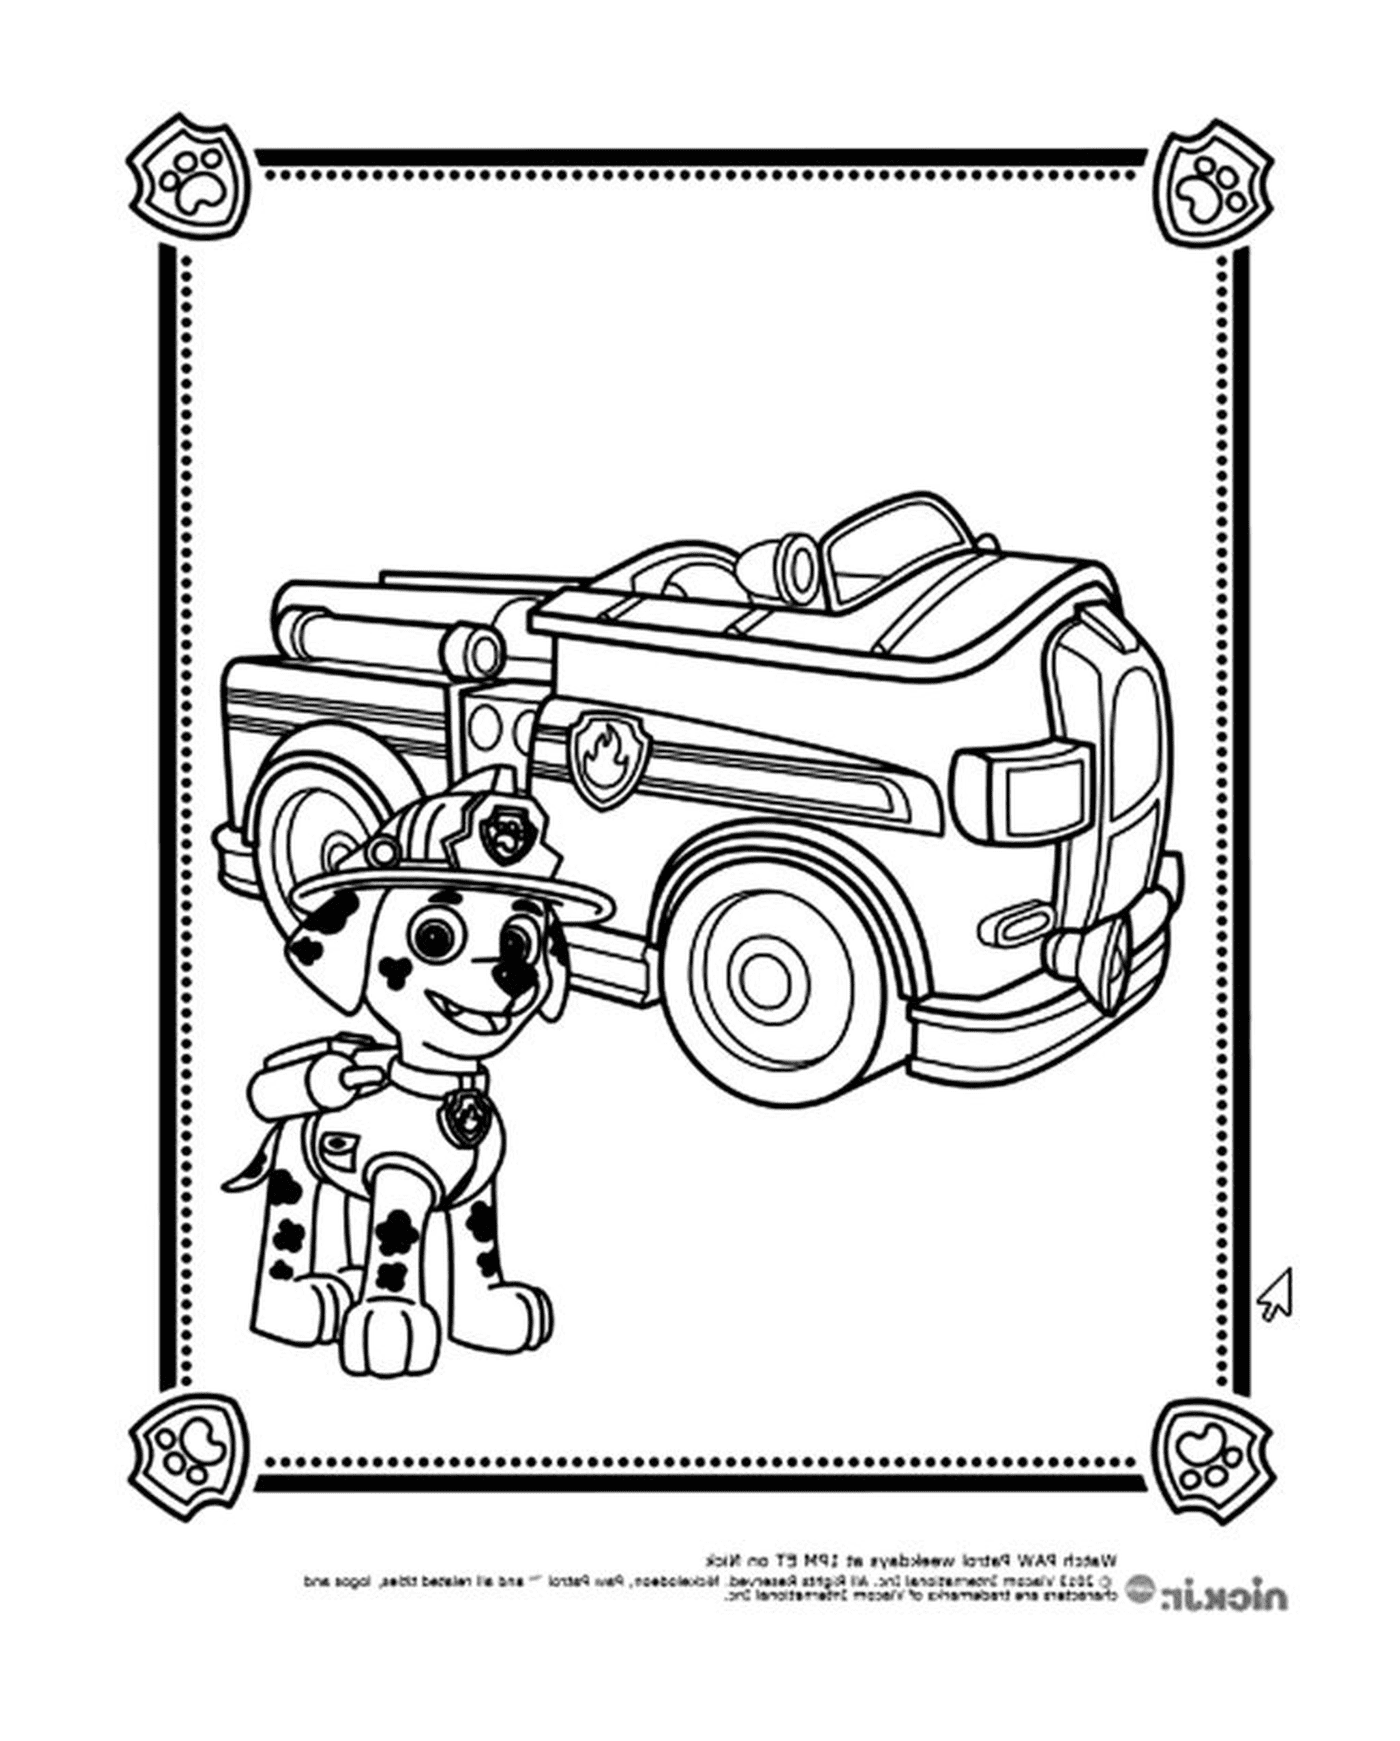  Dog Firefighter di fronte al camion pat pattuglia 